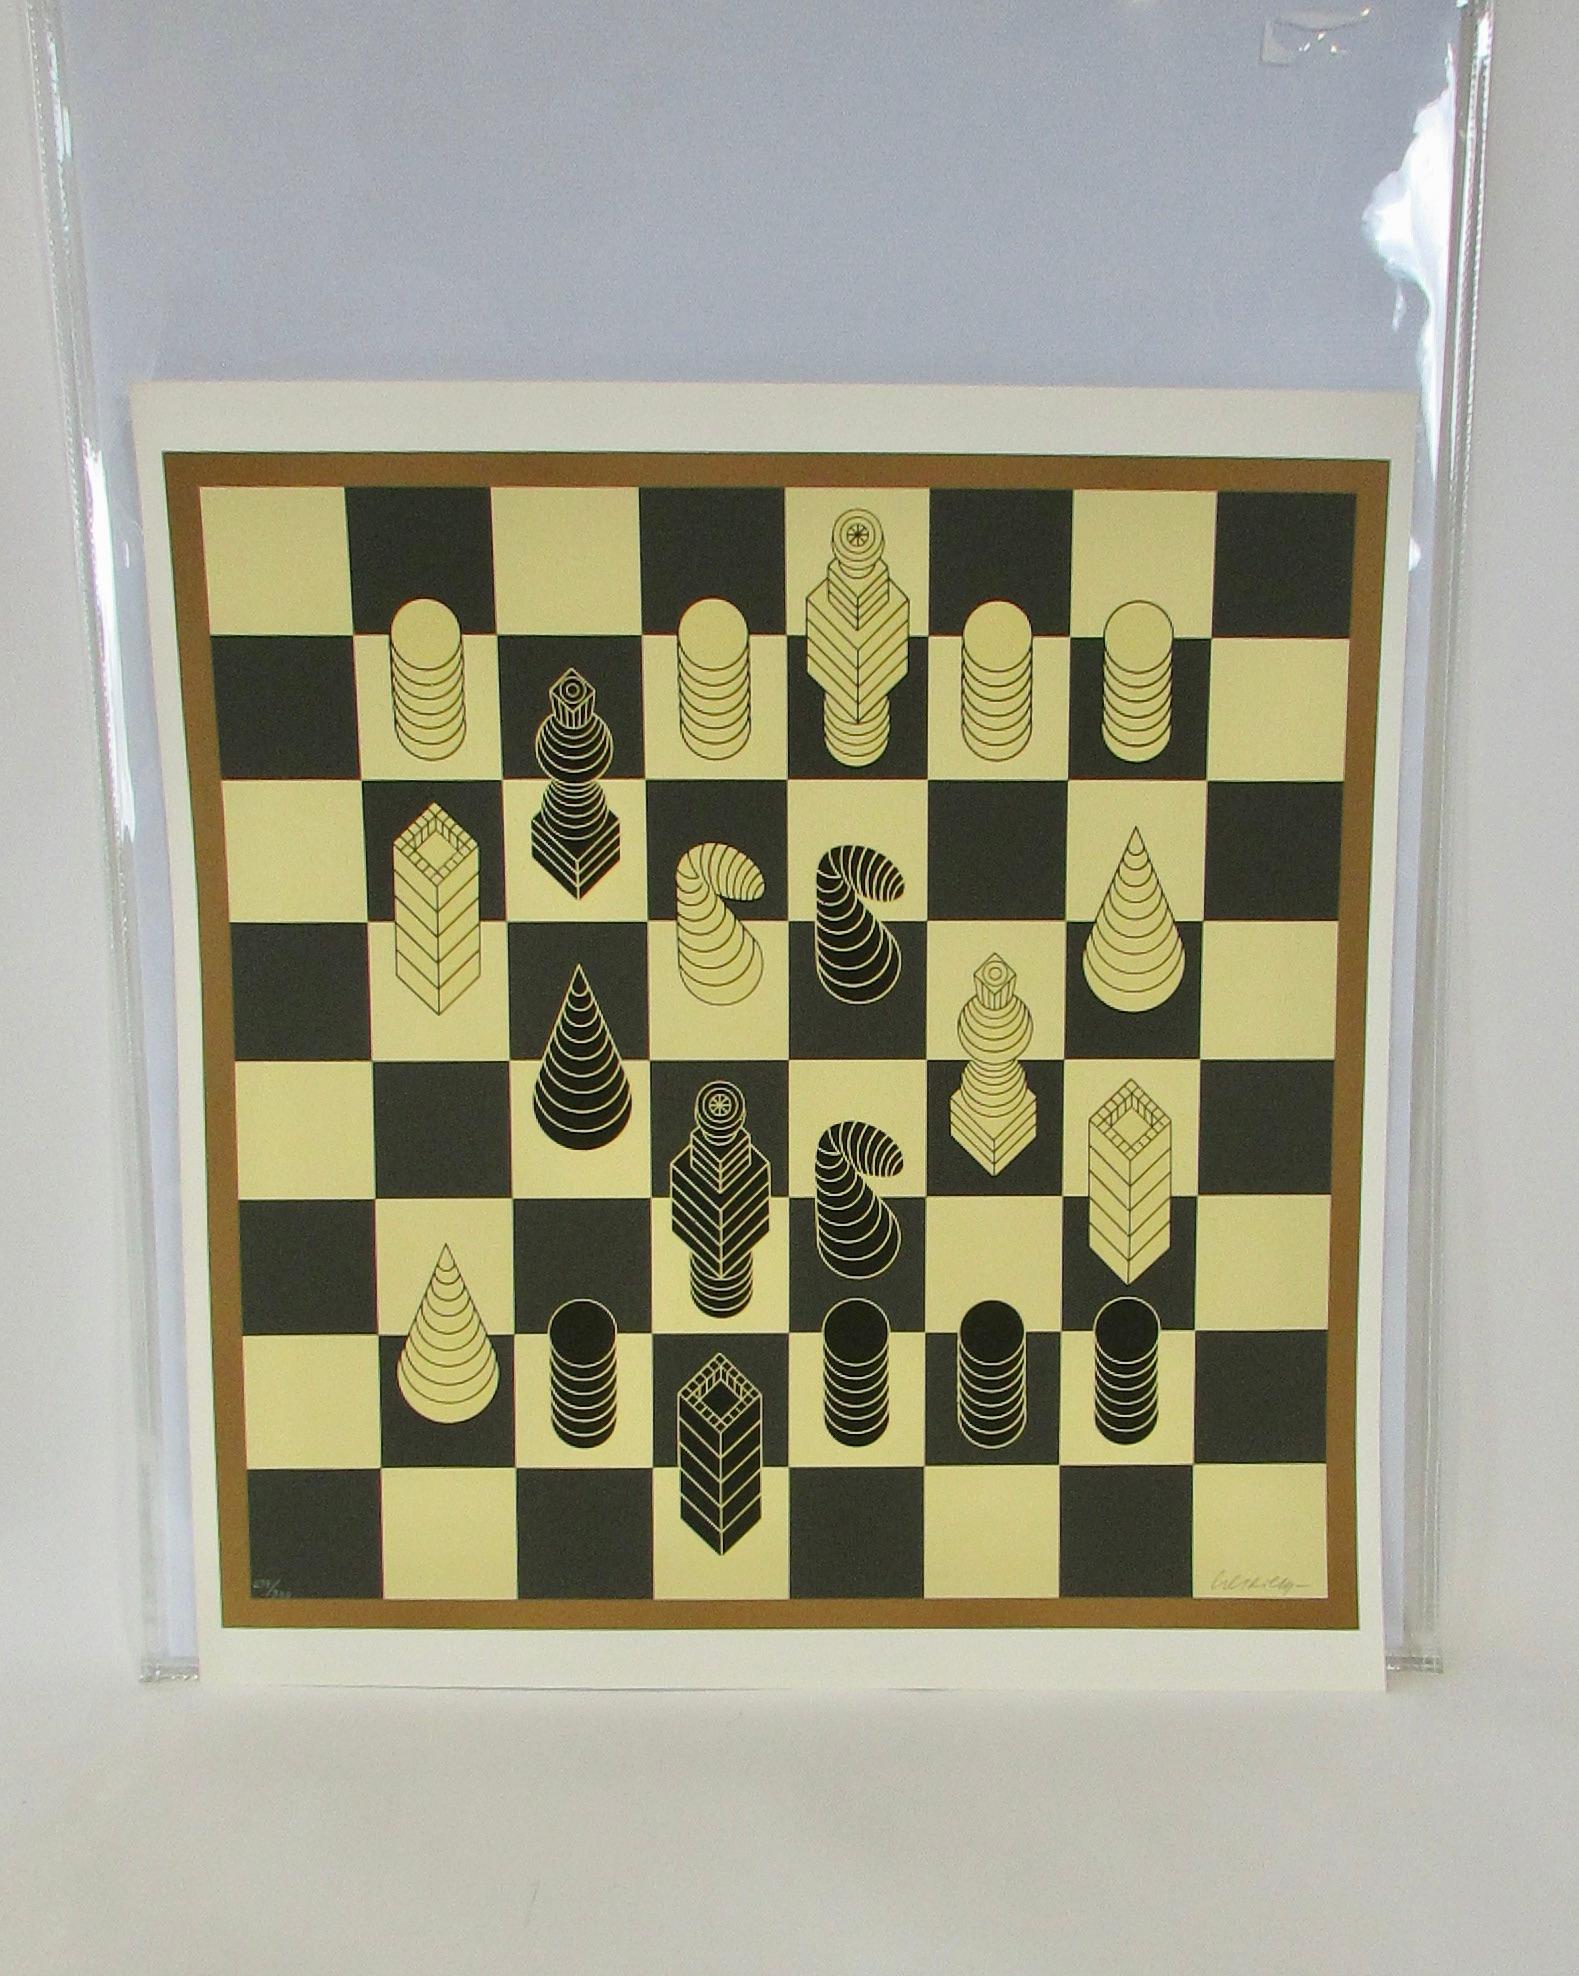 Victor Vasarely (français/hongrois, 1906-1997) Sérigraphie en couleurs sur papier vélin, C. 1975, Chess, H 29'' W 29'' Signée au crayon et numérotée 279/300.  Formes organiques surréalistes sur un échiquier . 
Non encadré. Estampillé au dos Circle